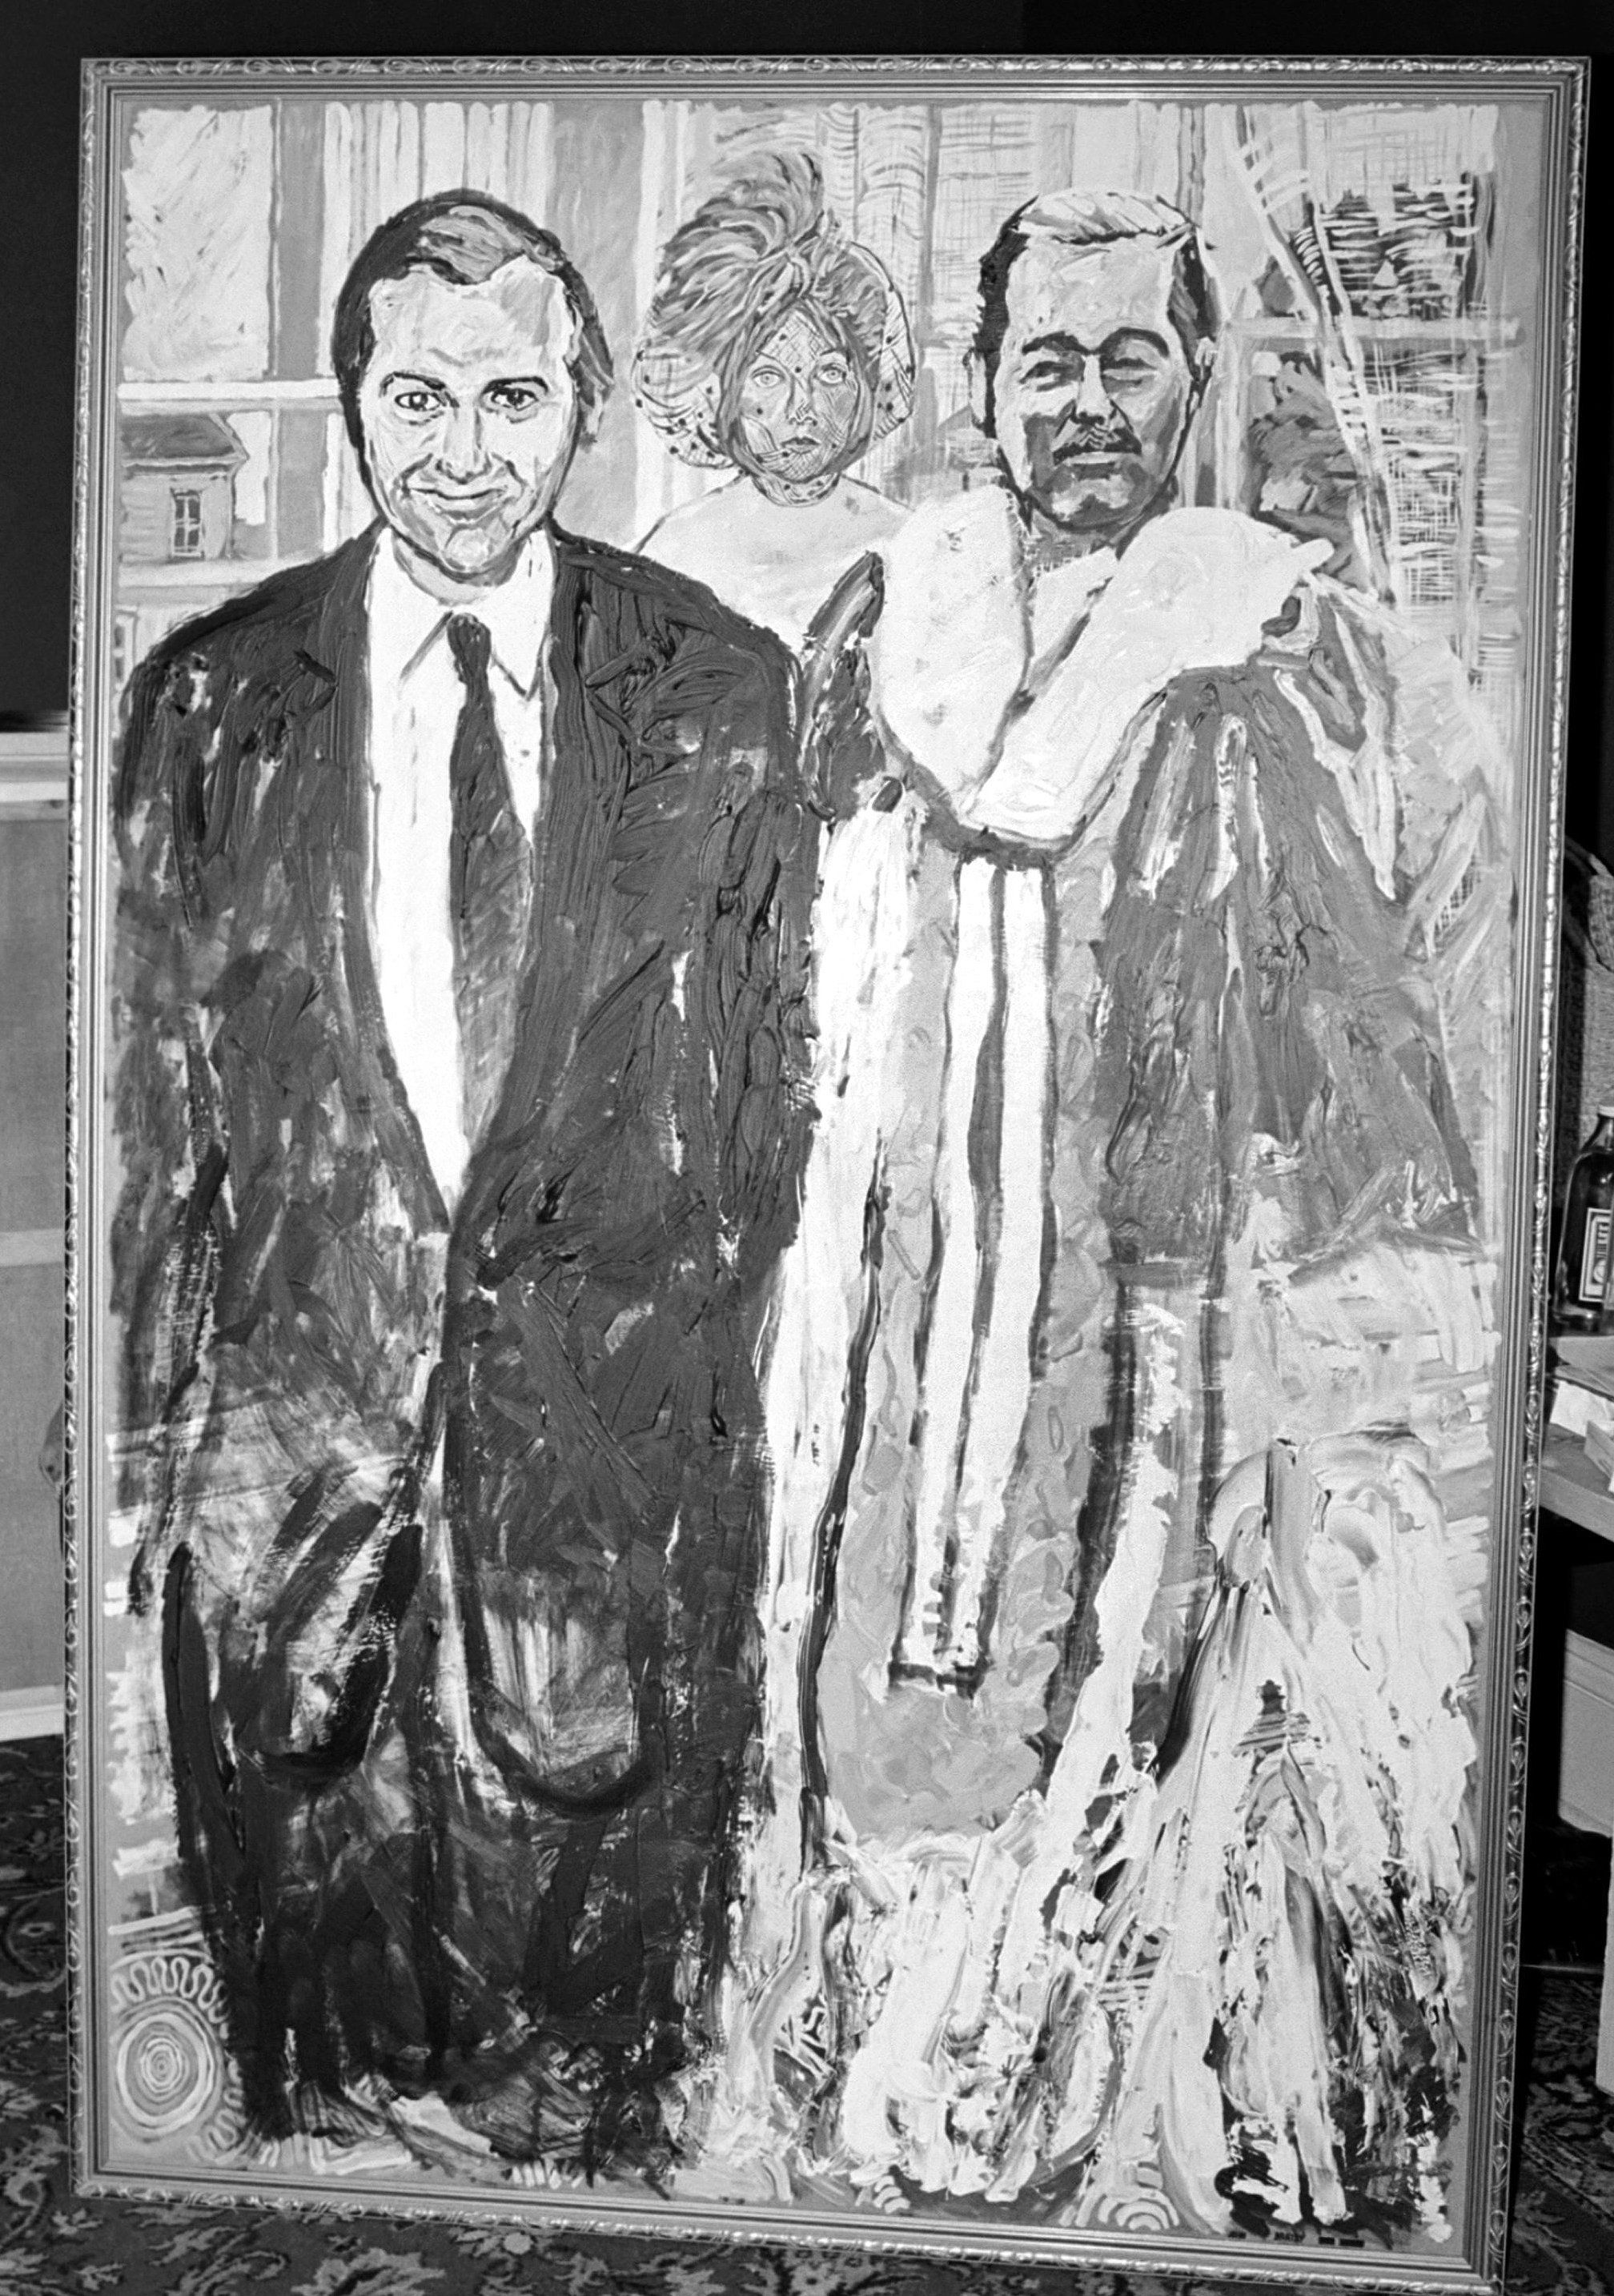 "Los fugitivos", un retrato doble pintado por el británico John Bratby en 1975 de John Stonehouse y Lord Lucan, la pareja de fugitivos más famosa de 1974. La misteriosa mujer velada, es, según dice el artista, "La Diosa de la Catástrofe Psicológica".